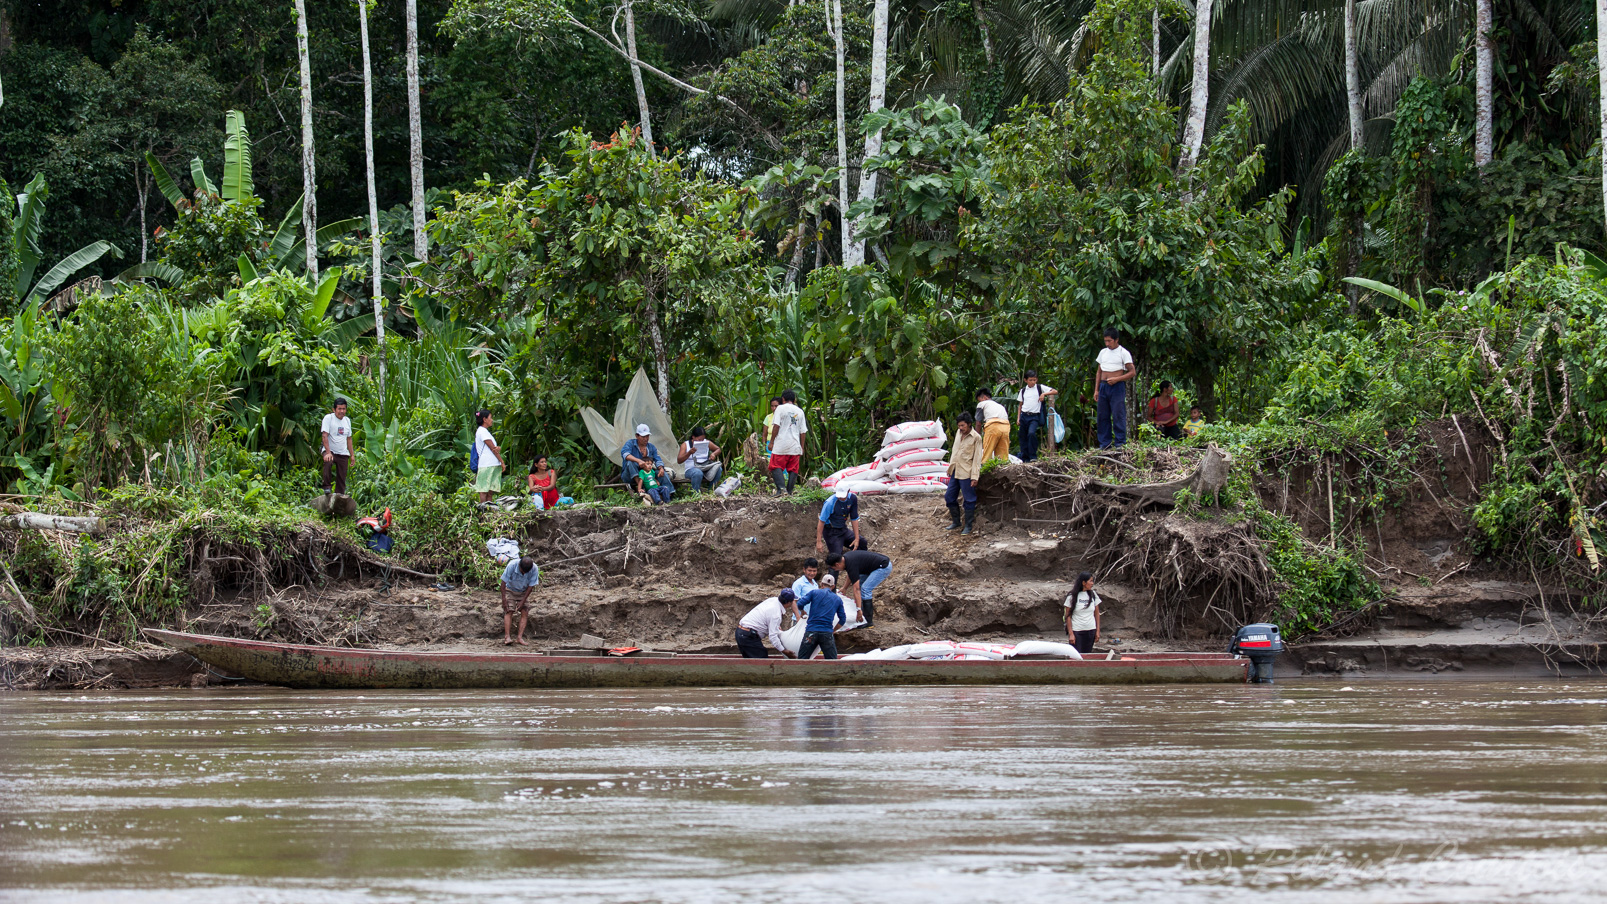 Tous les transports se font presqu'exclusivement par pirogue dans la région amazoniènne